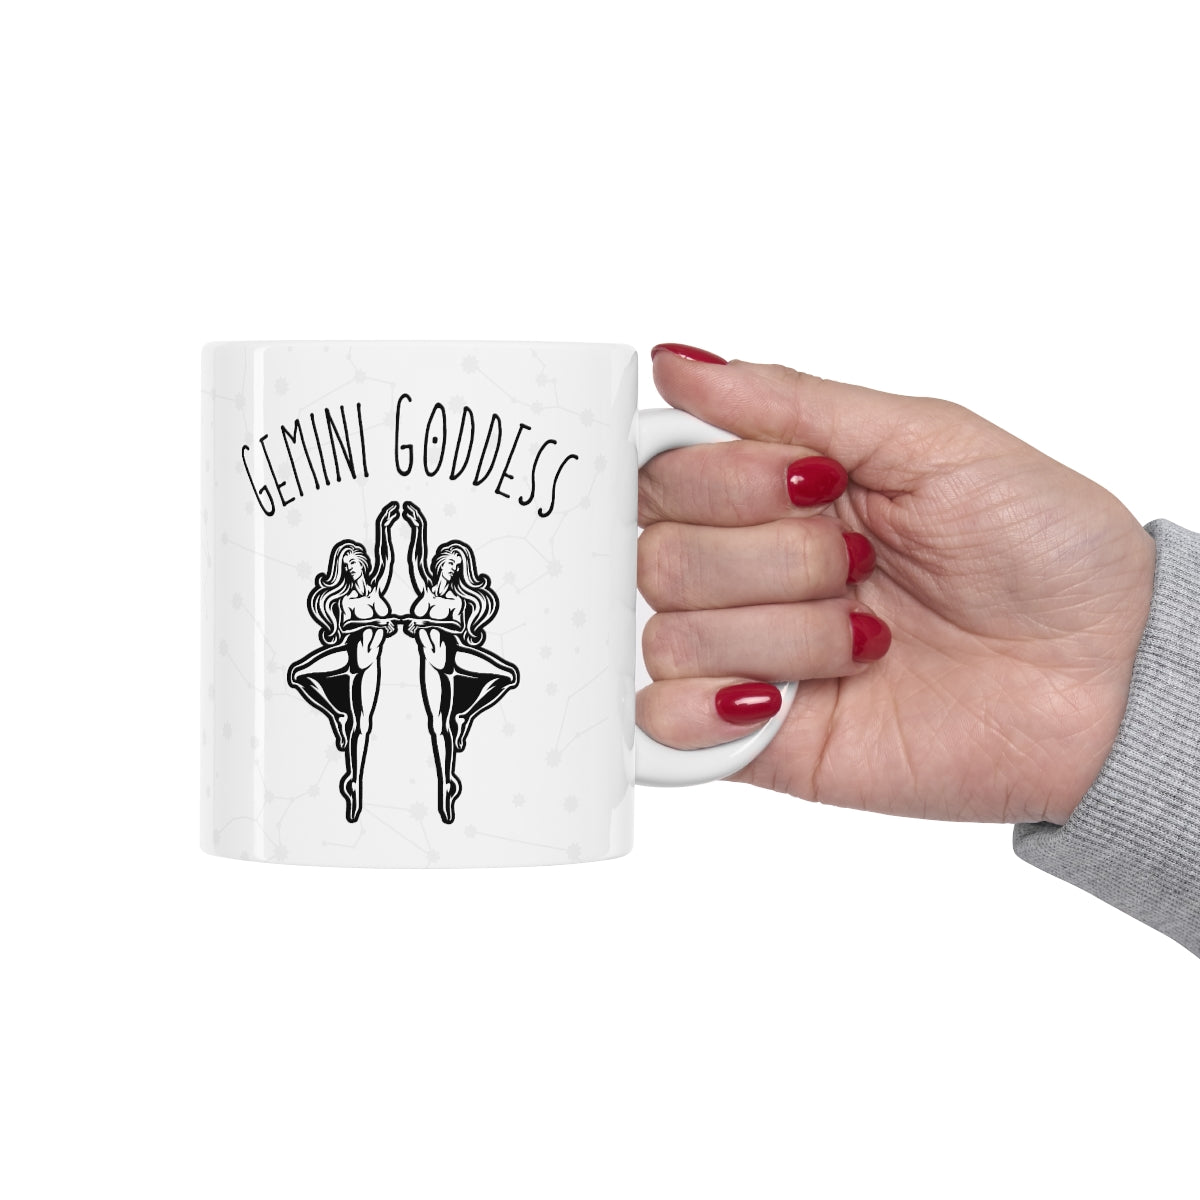 Gemini Goddess Astrology Mug 12